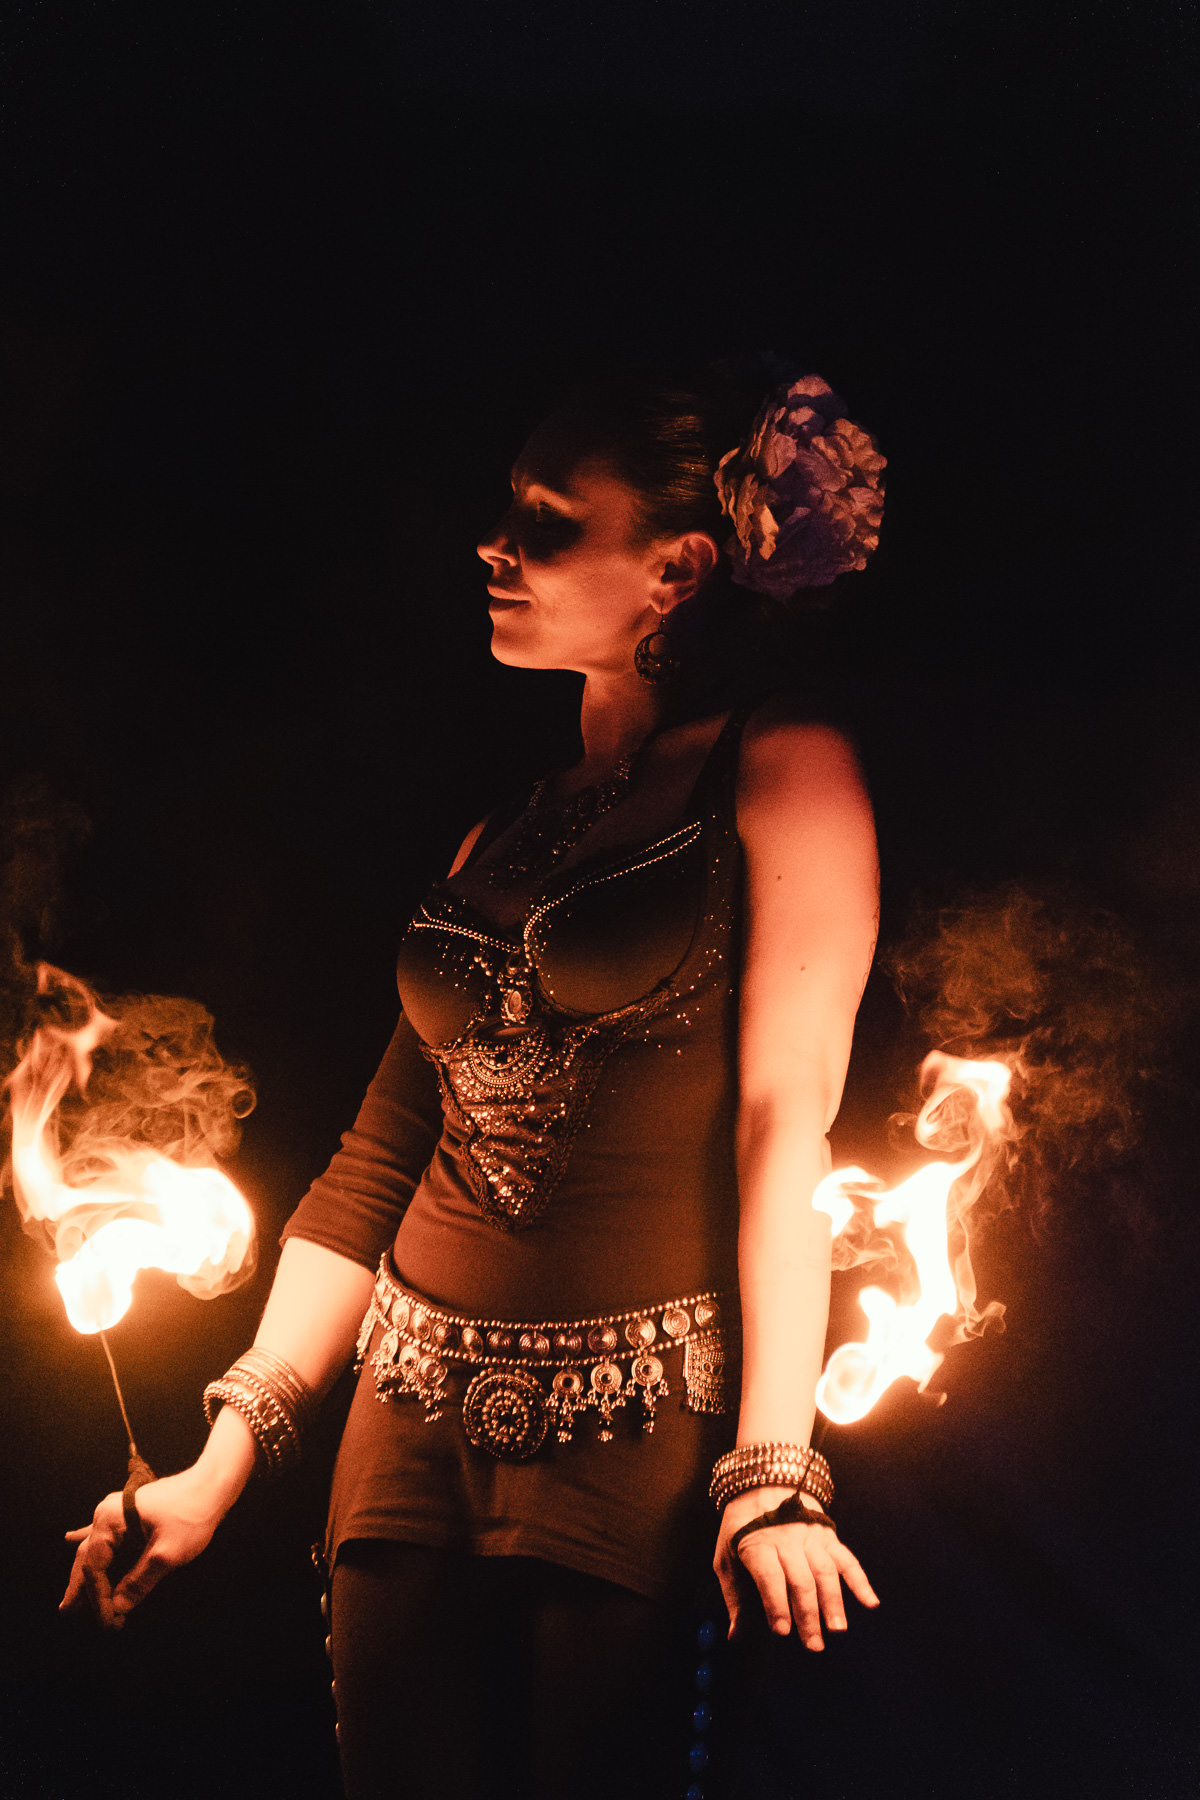 Compagnie Manda Lights, spectacle de feu et de pyrotechnie, photographiée à La Ravoire en 2018 à l'occasion de la fête de La Saint Jean